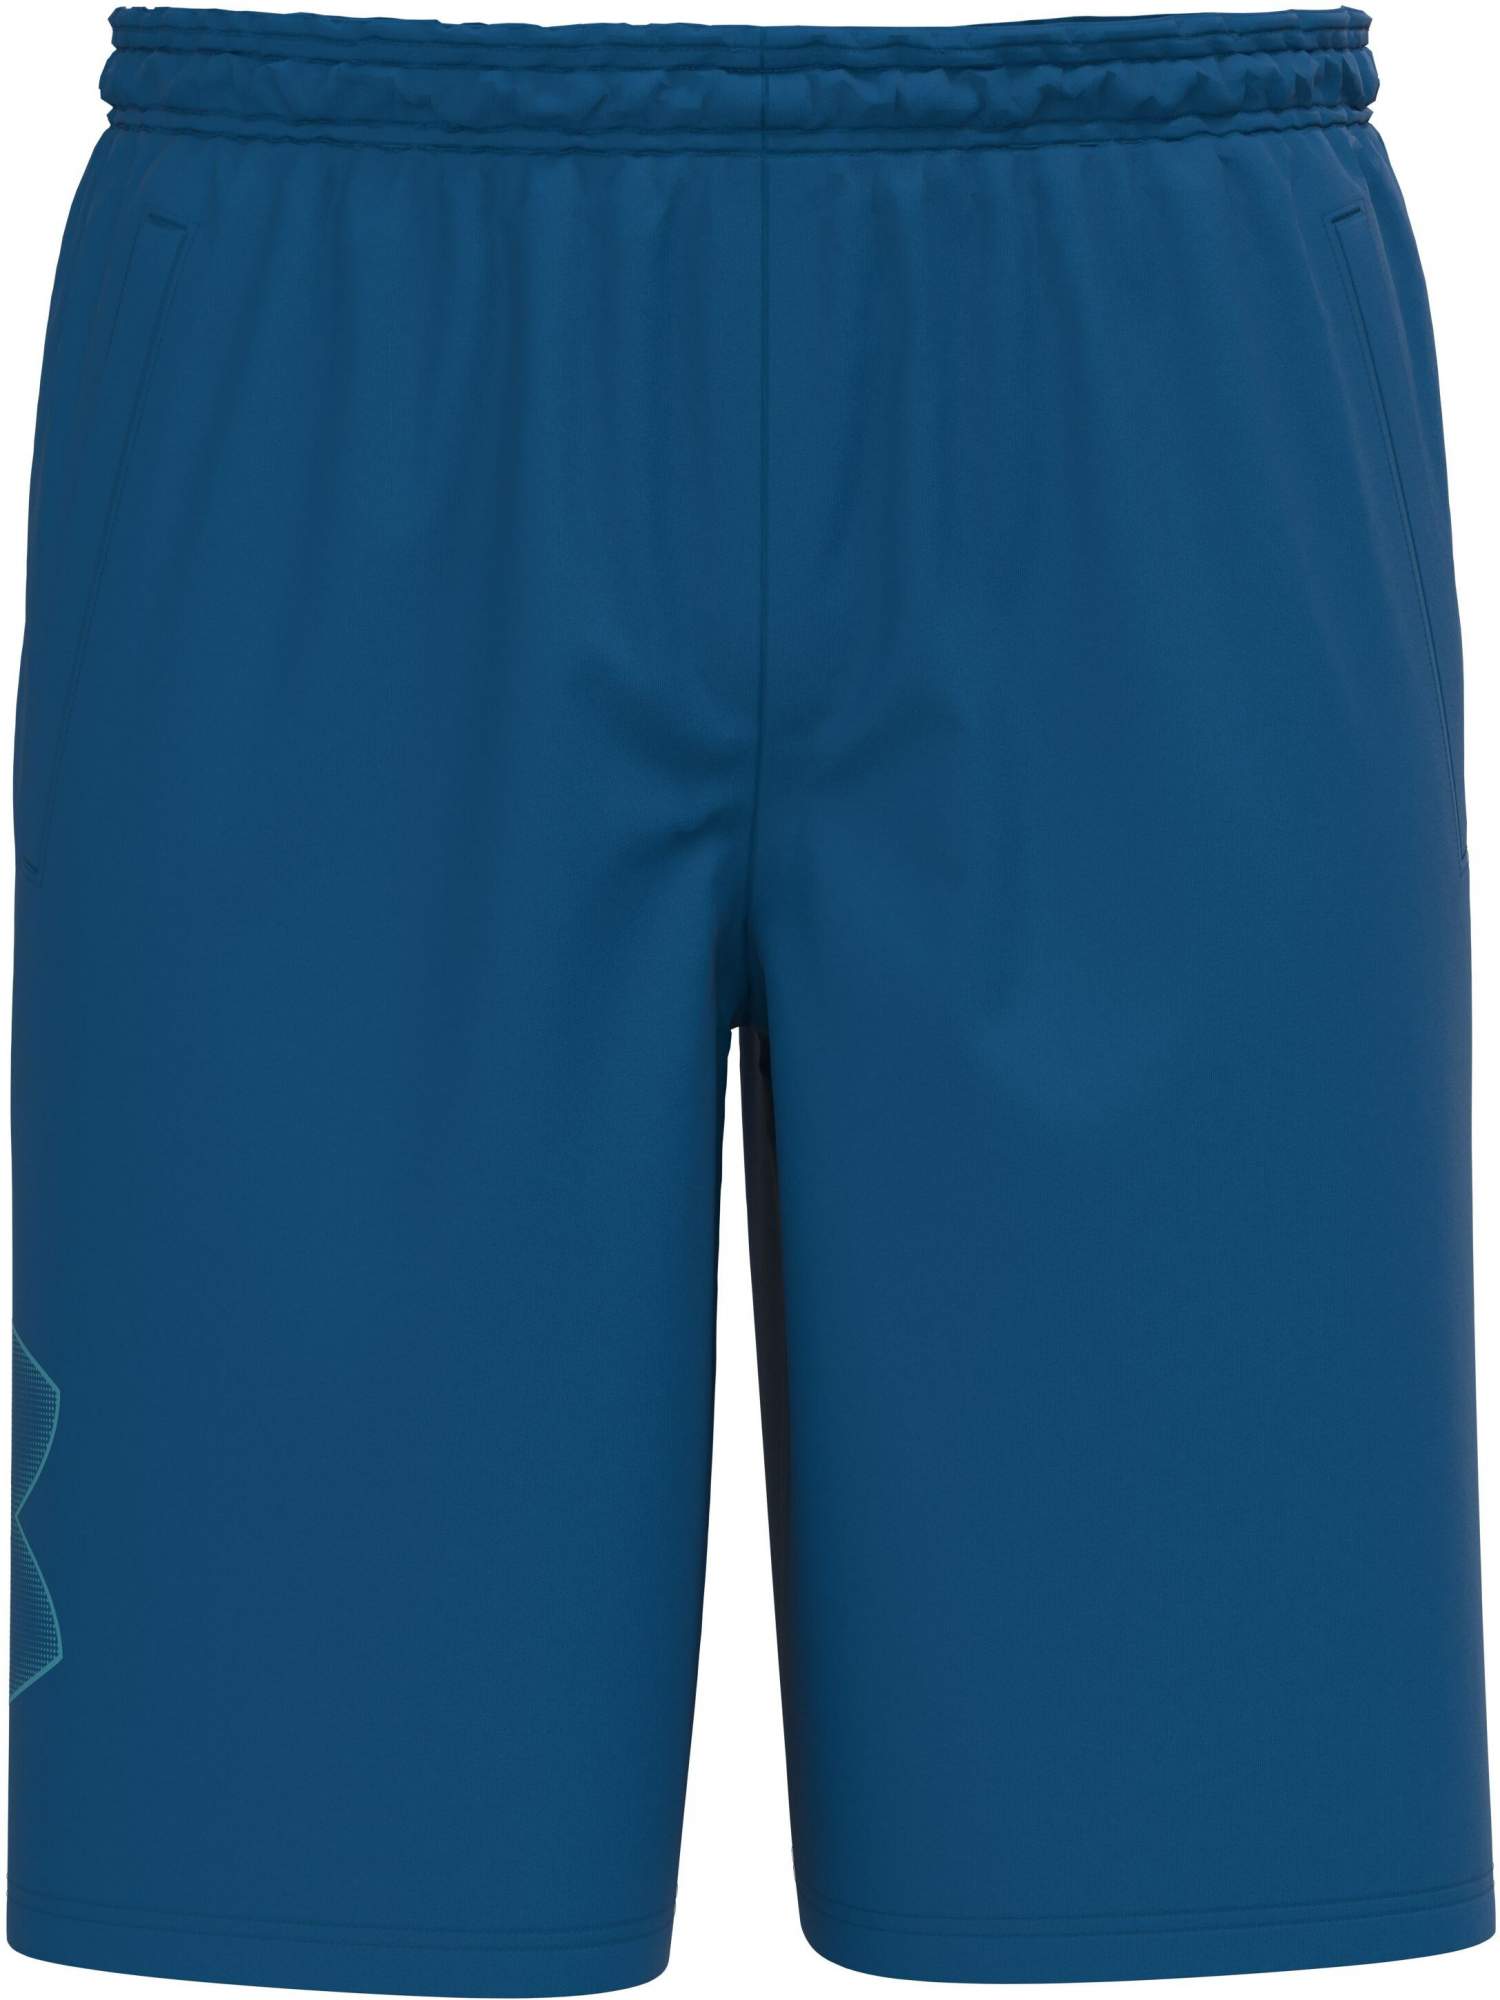 Спортивные шорты мужские Under Armour 1306443-899 синие MD - купить в SportPoint, цена на Мегамаркет